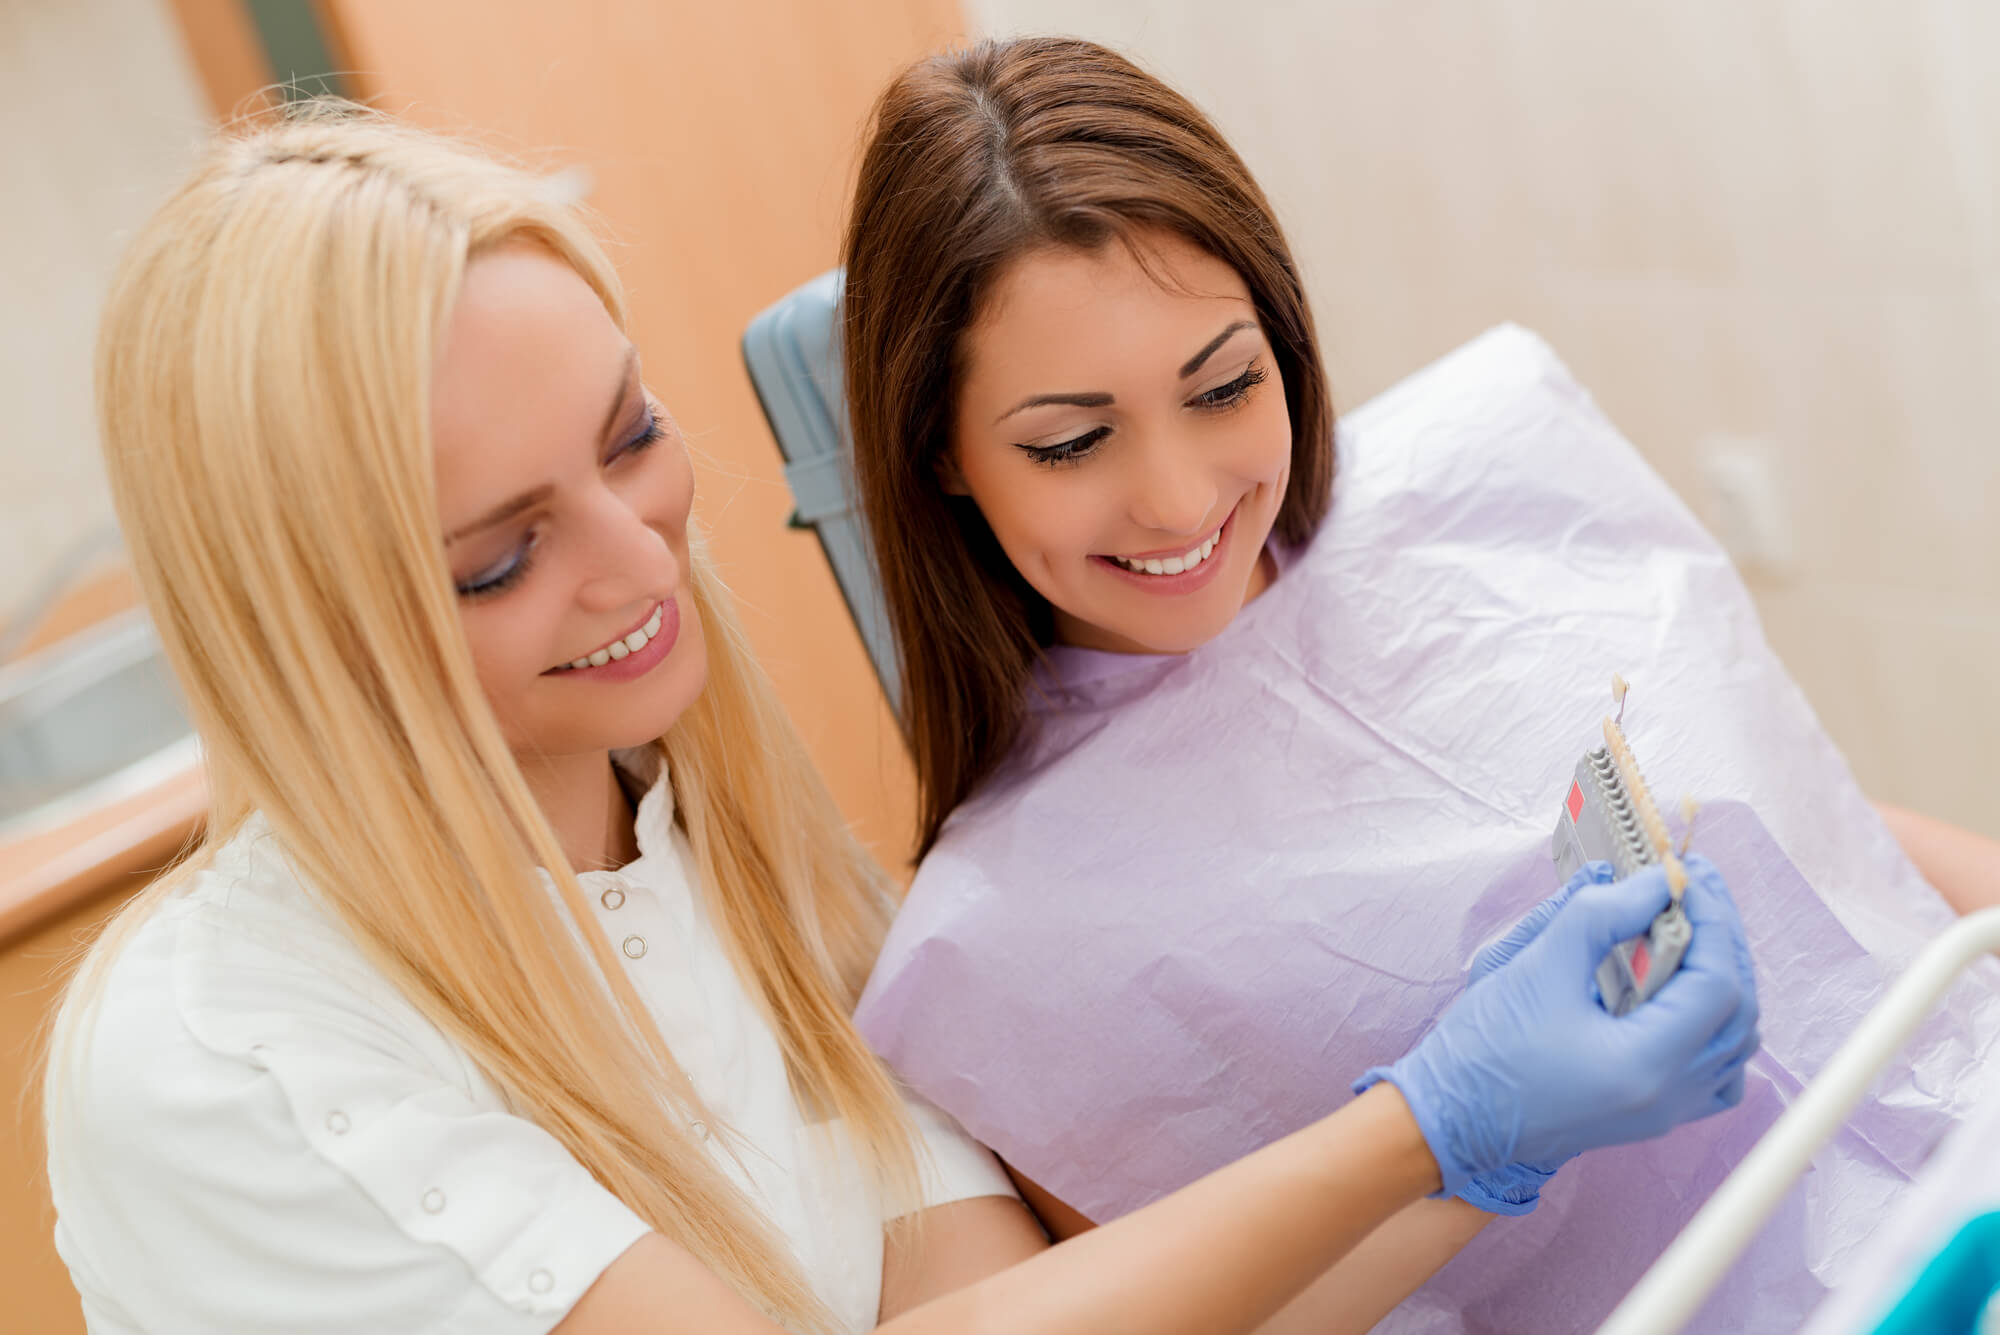 prosthodontist in las vegas lets patient choose a veneer shade